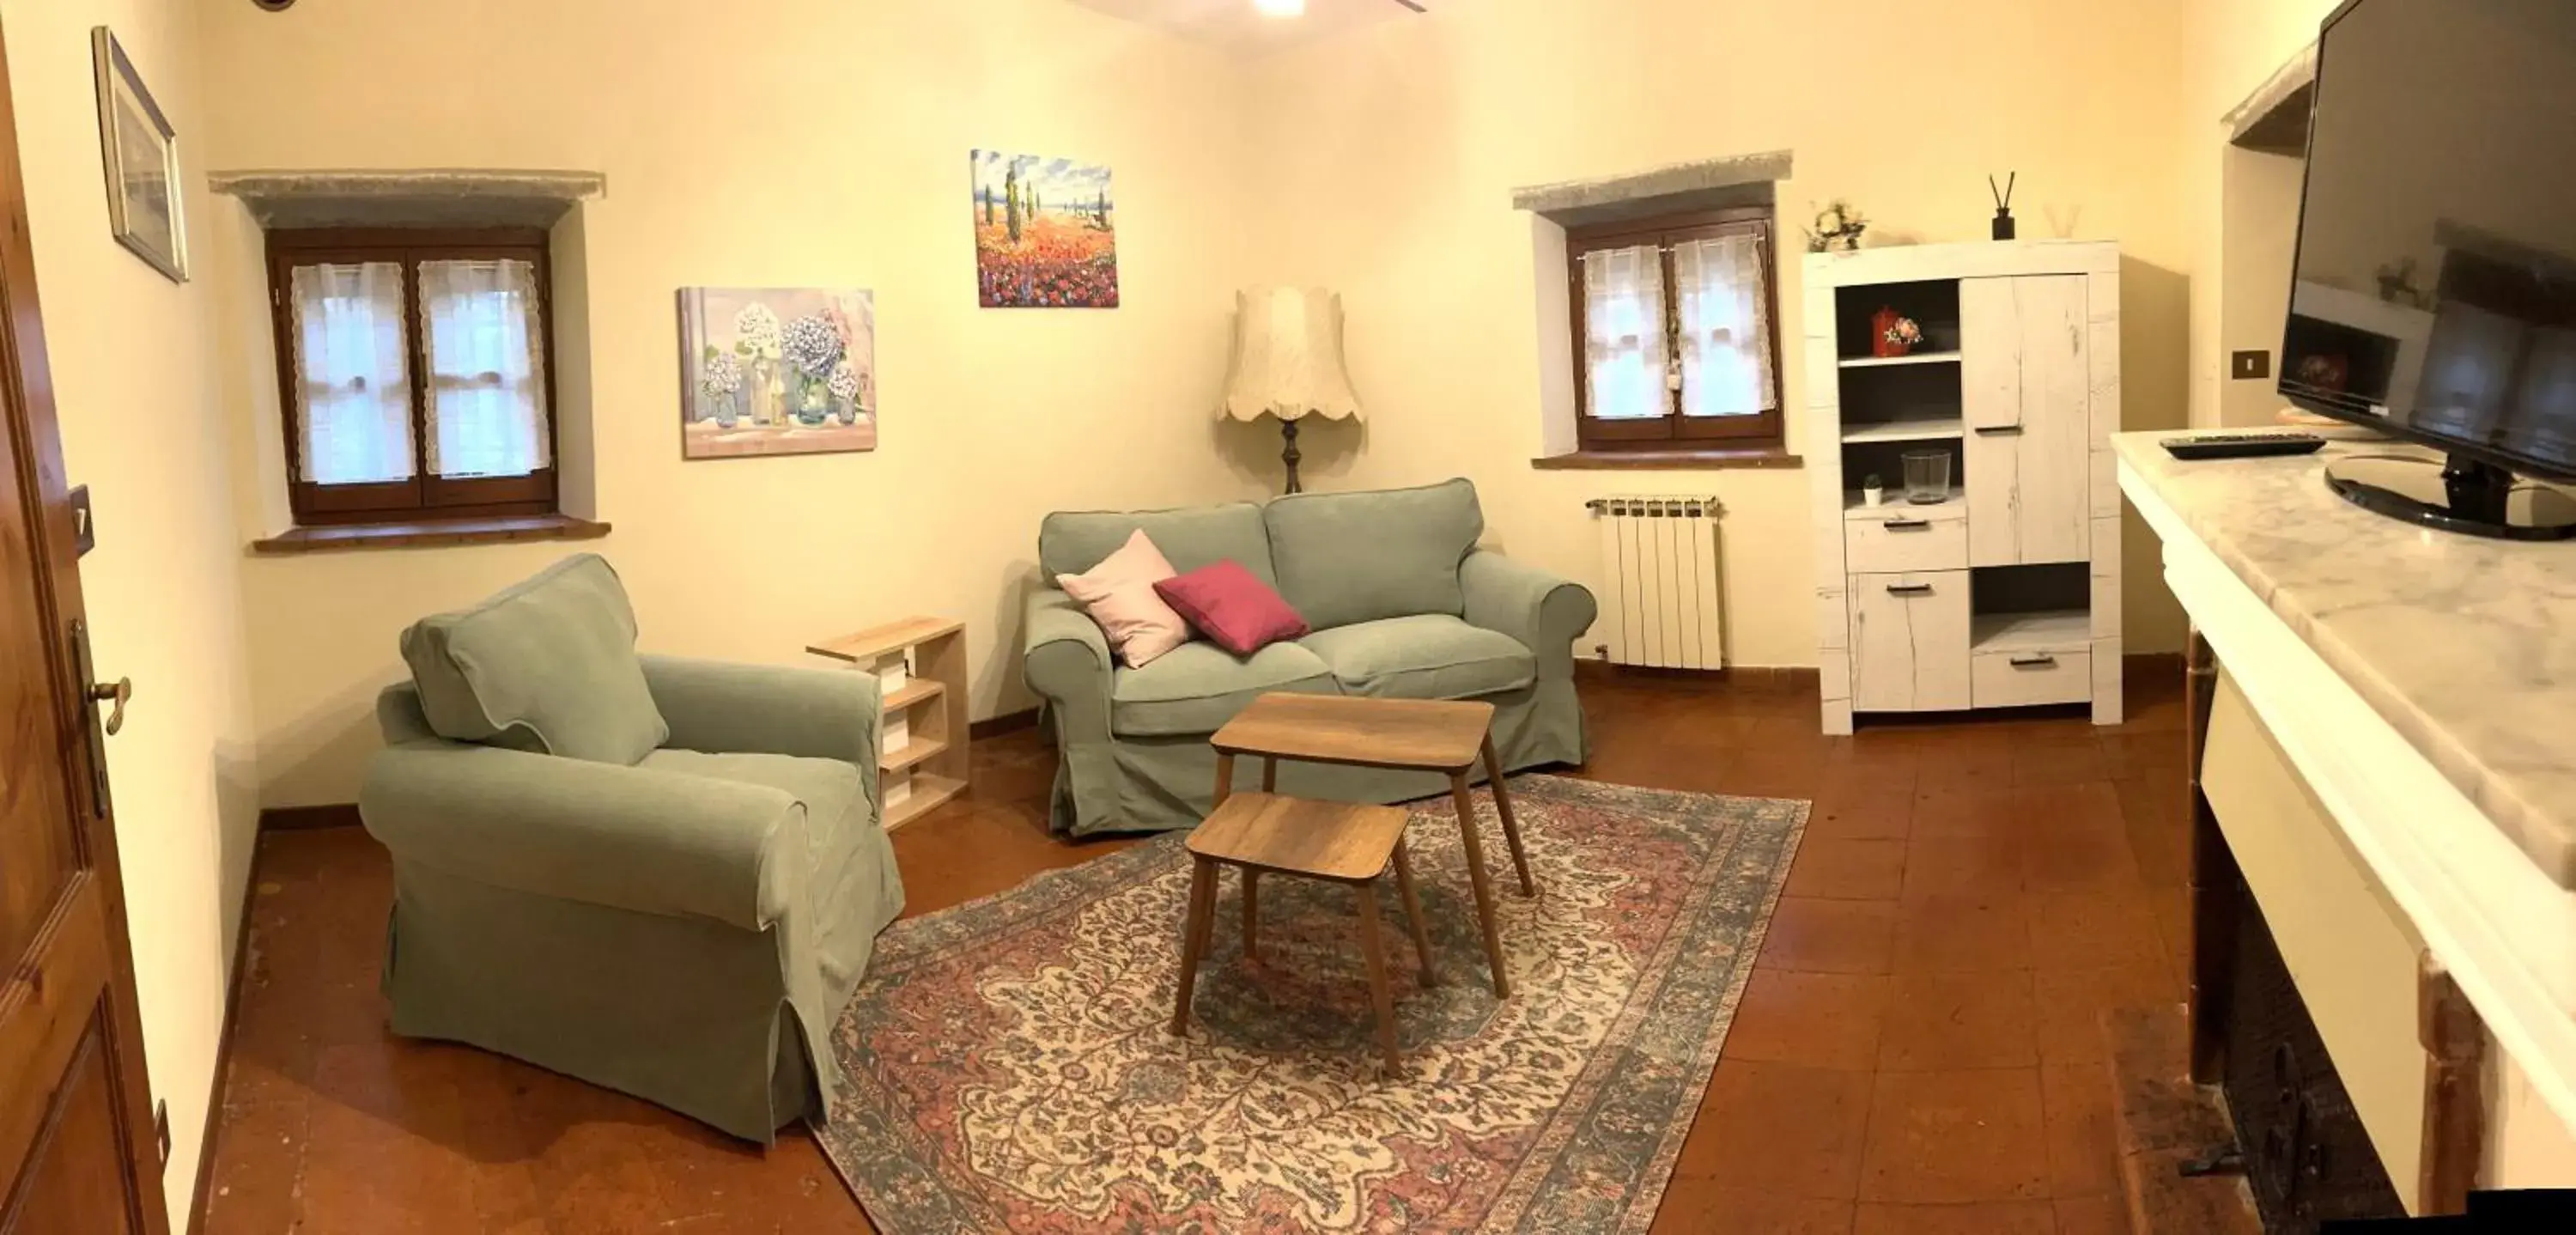 TV and multimedia, Seating Area in Villa Schiatti